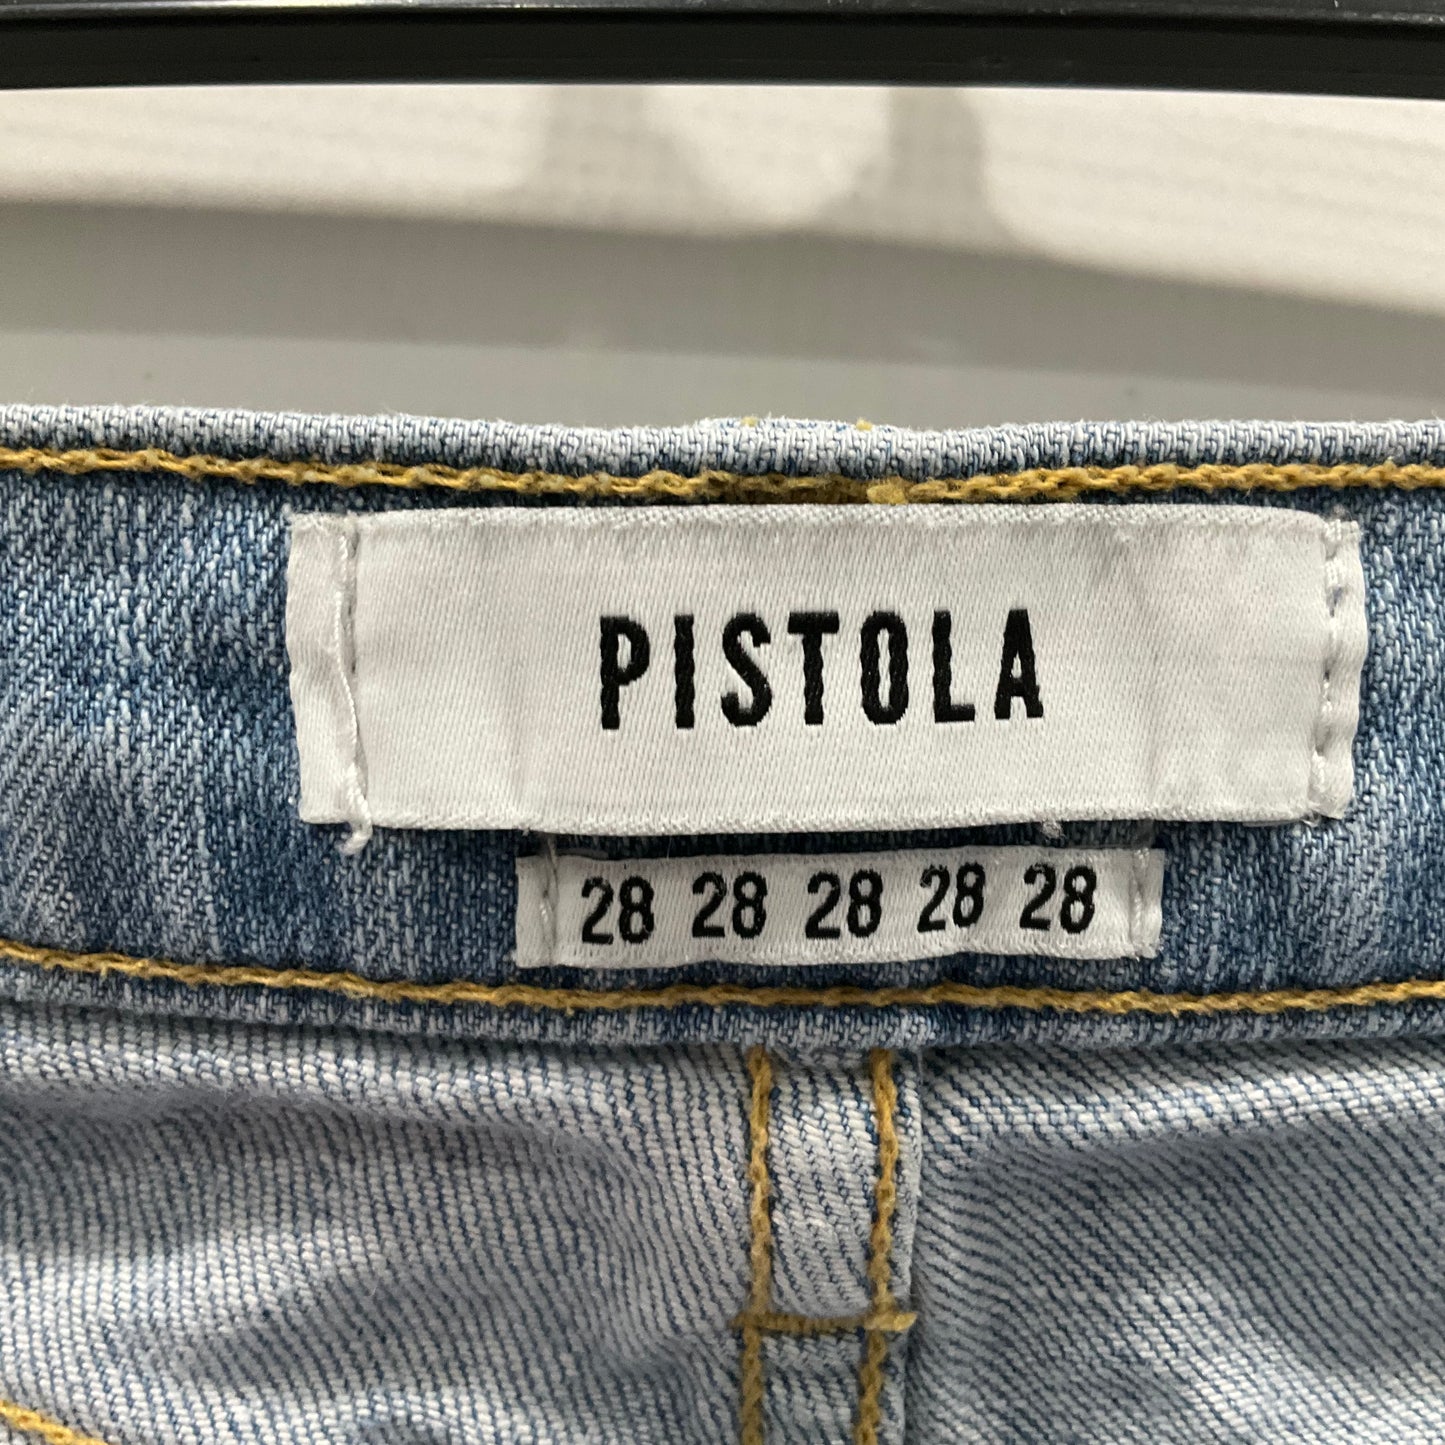 Jeans Boyfriend By Pistola  Size: 6